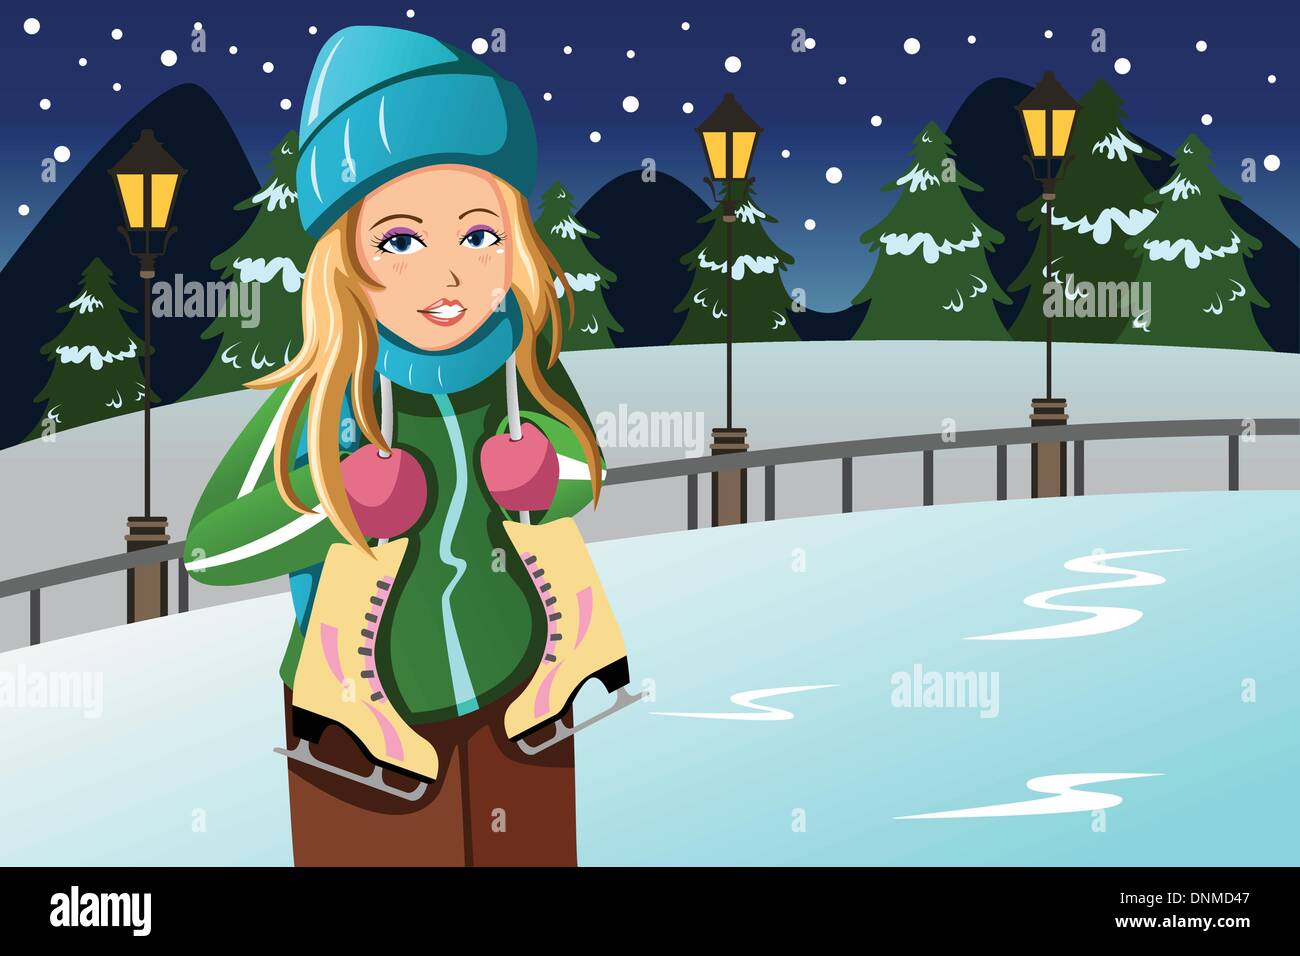 Un vecteur illustration de la belle fille de l'hiver avec des patins à glace accroché autour du cou Illustration de Vecteur